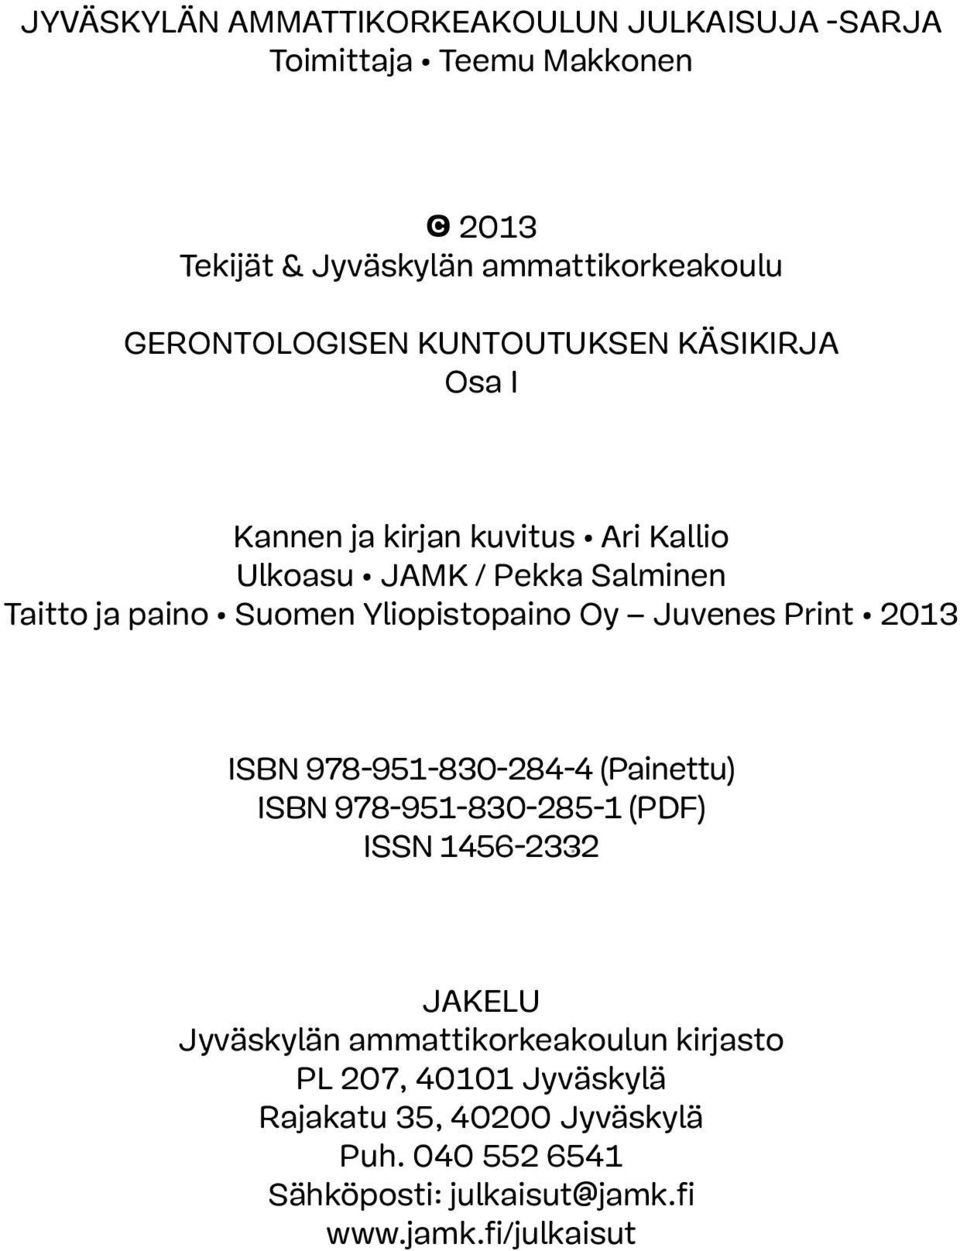 Oy Juvenes Print 2013 ISBN 978-951-830-284-4 (Painettu) ISBN 978-951-830-285-1 (PDF) ISSN 1456-2332 JAKELU Jyväskylän